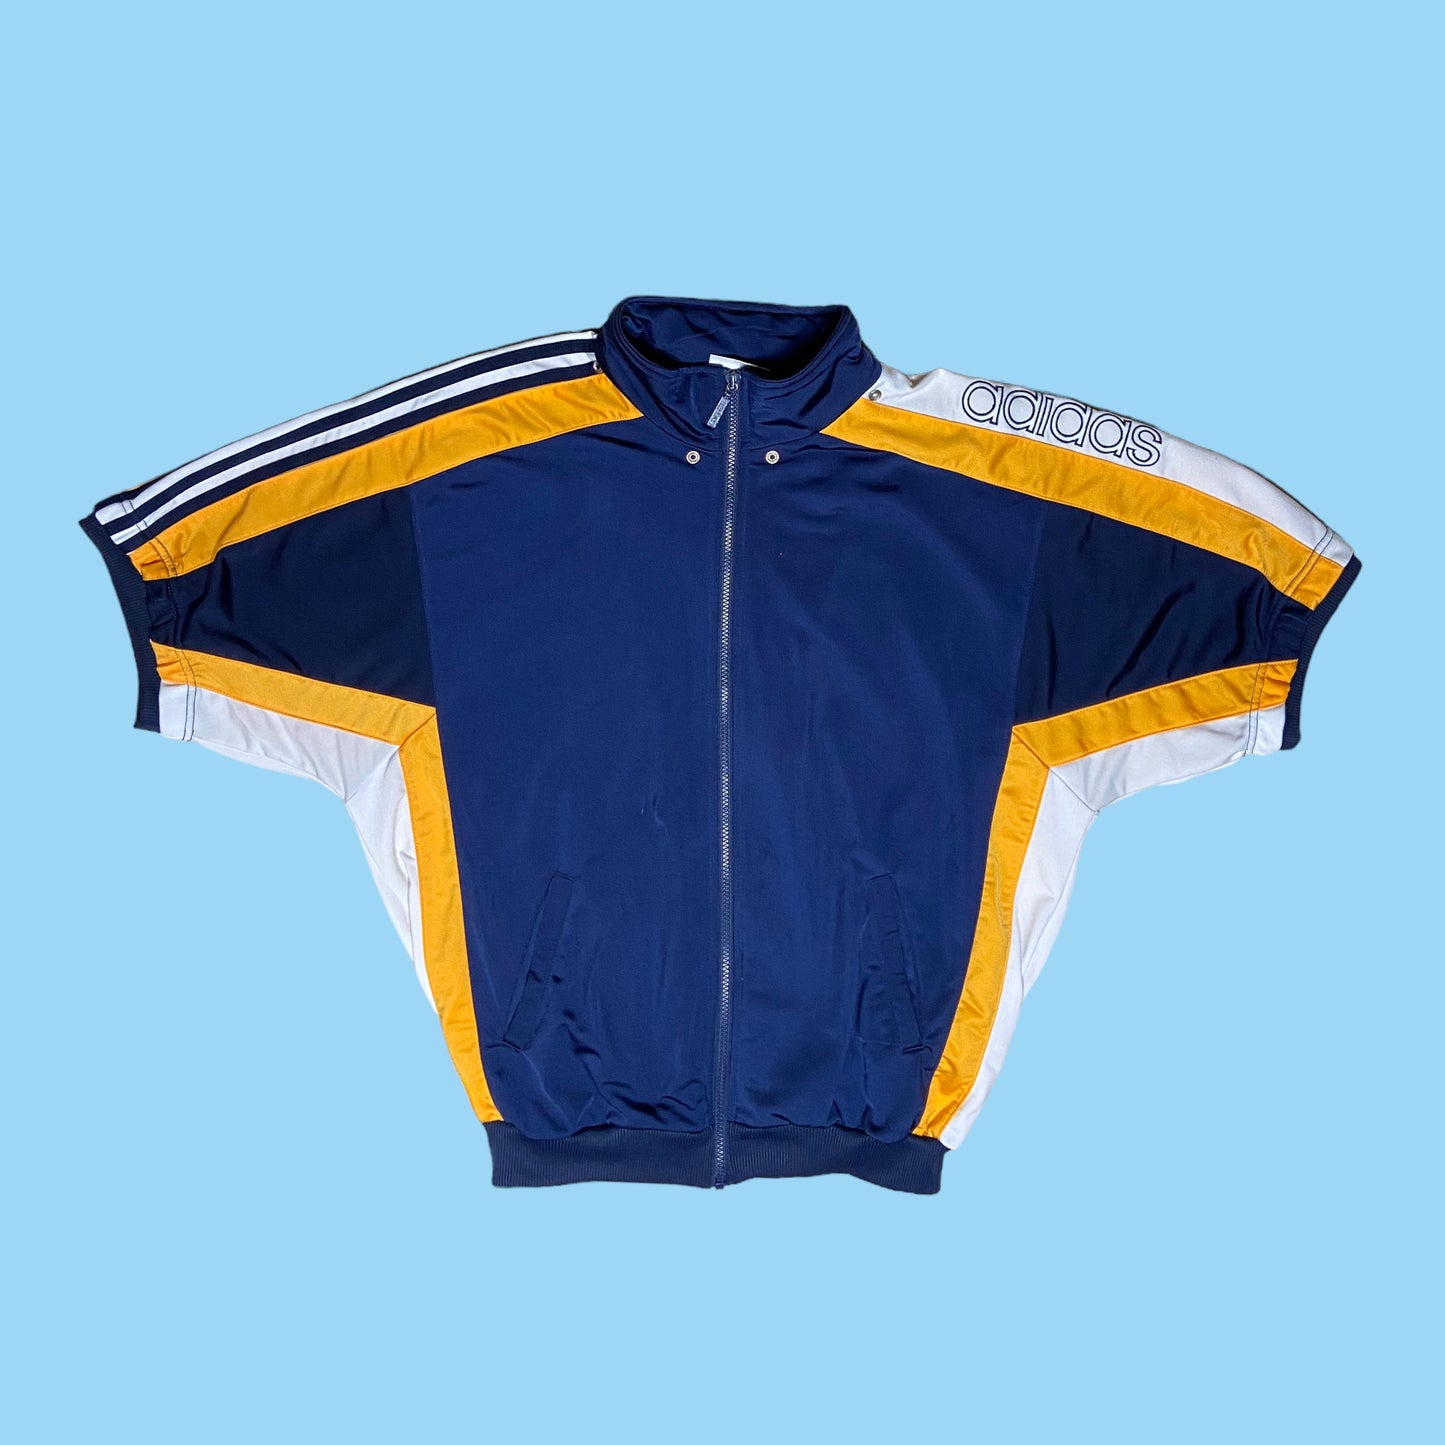 Vintage Adidas track jacket - M